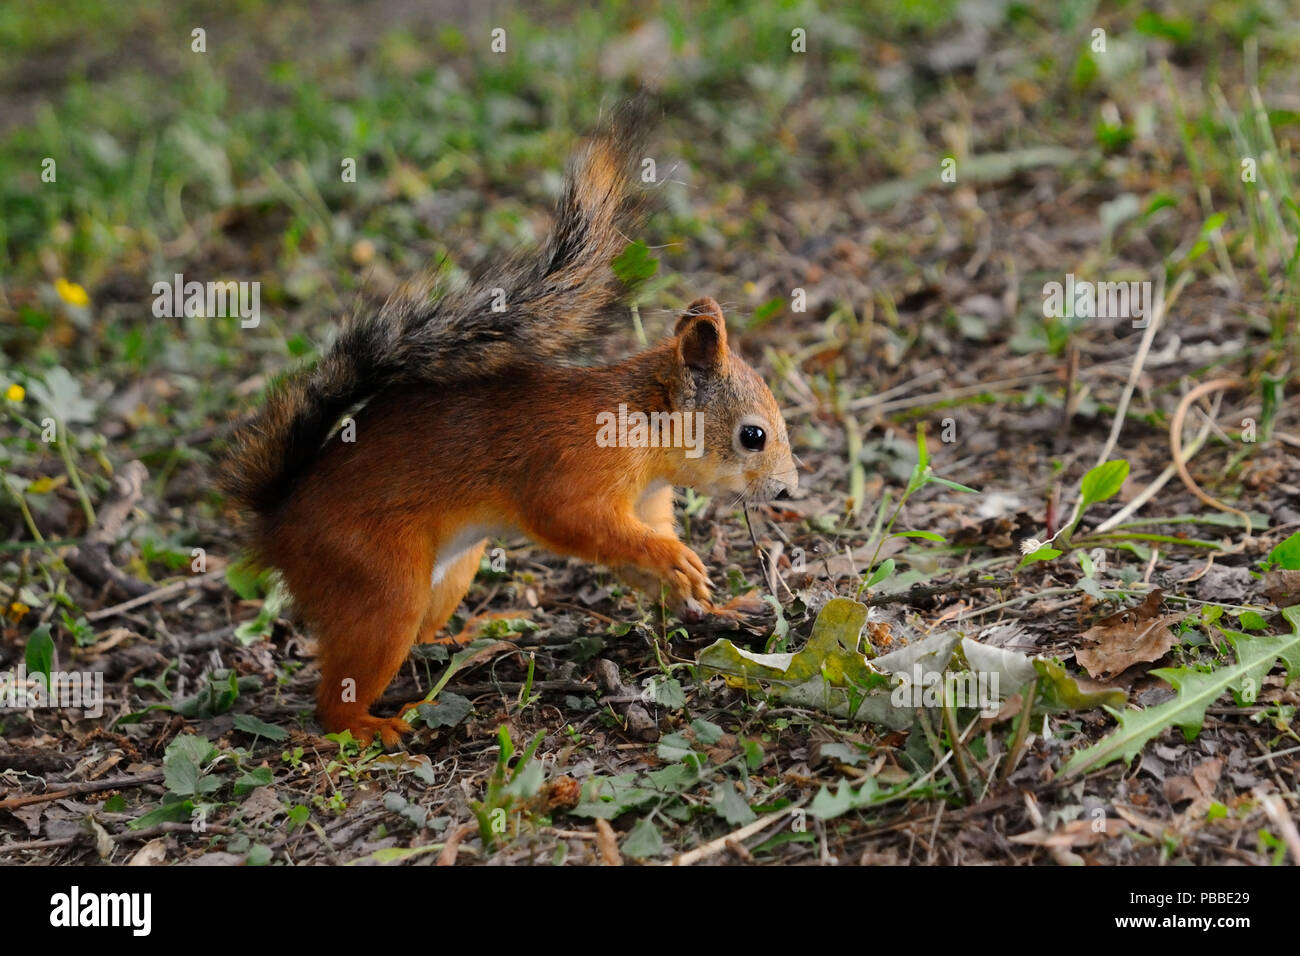 Cucciolo di scoiattolo sta cercando di nascondere il dado nel suolo, isola Elagin, San Pietroburgo, Russia Foto Stock